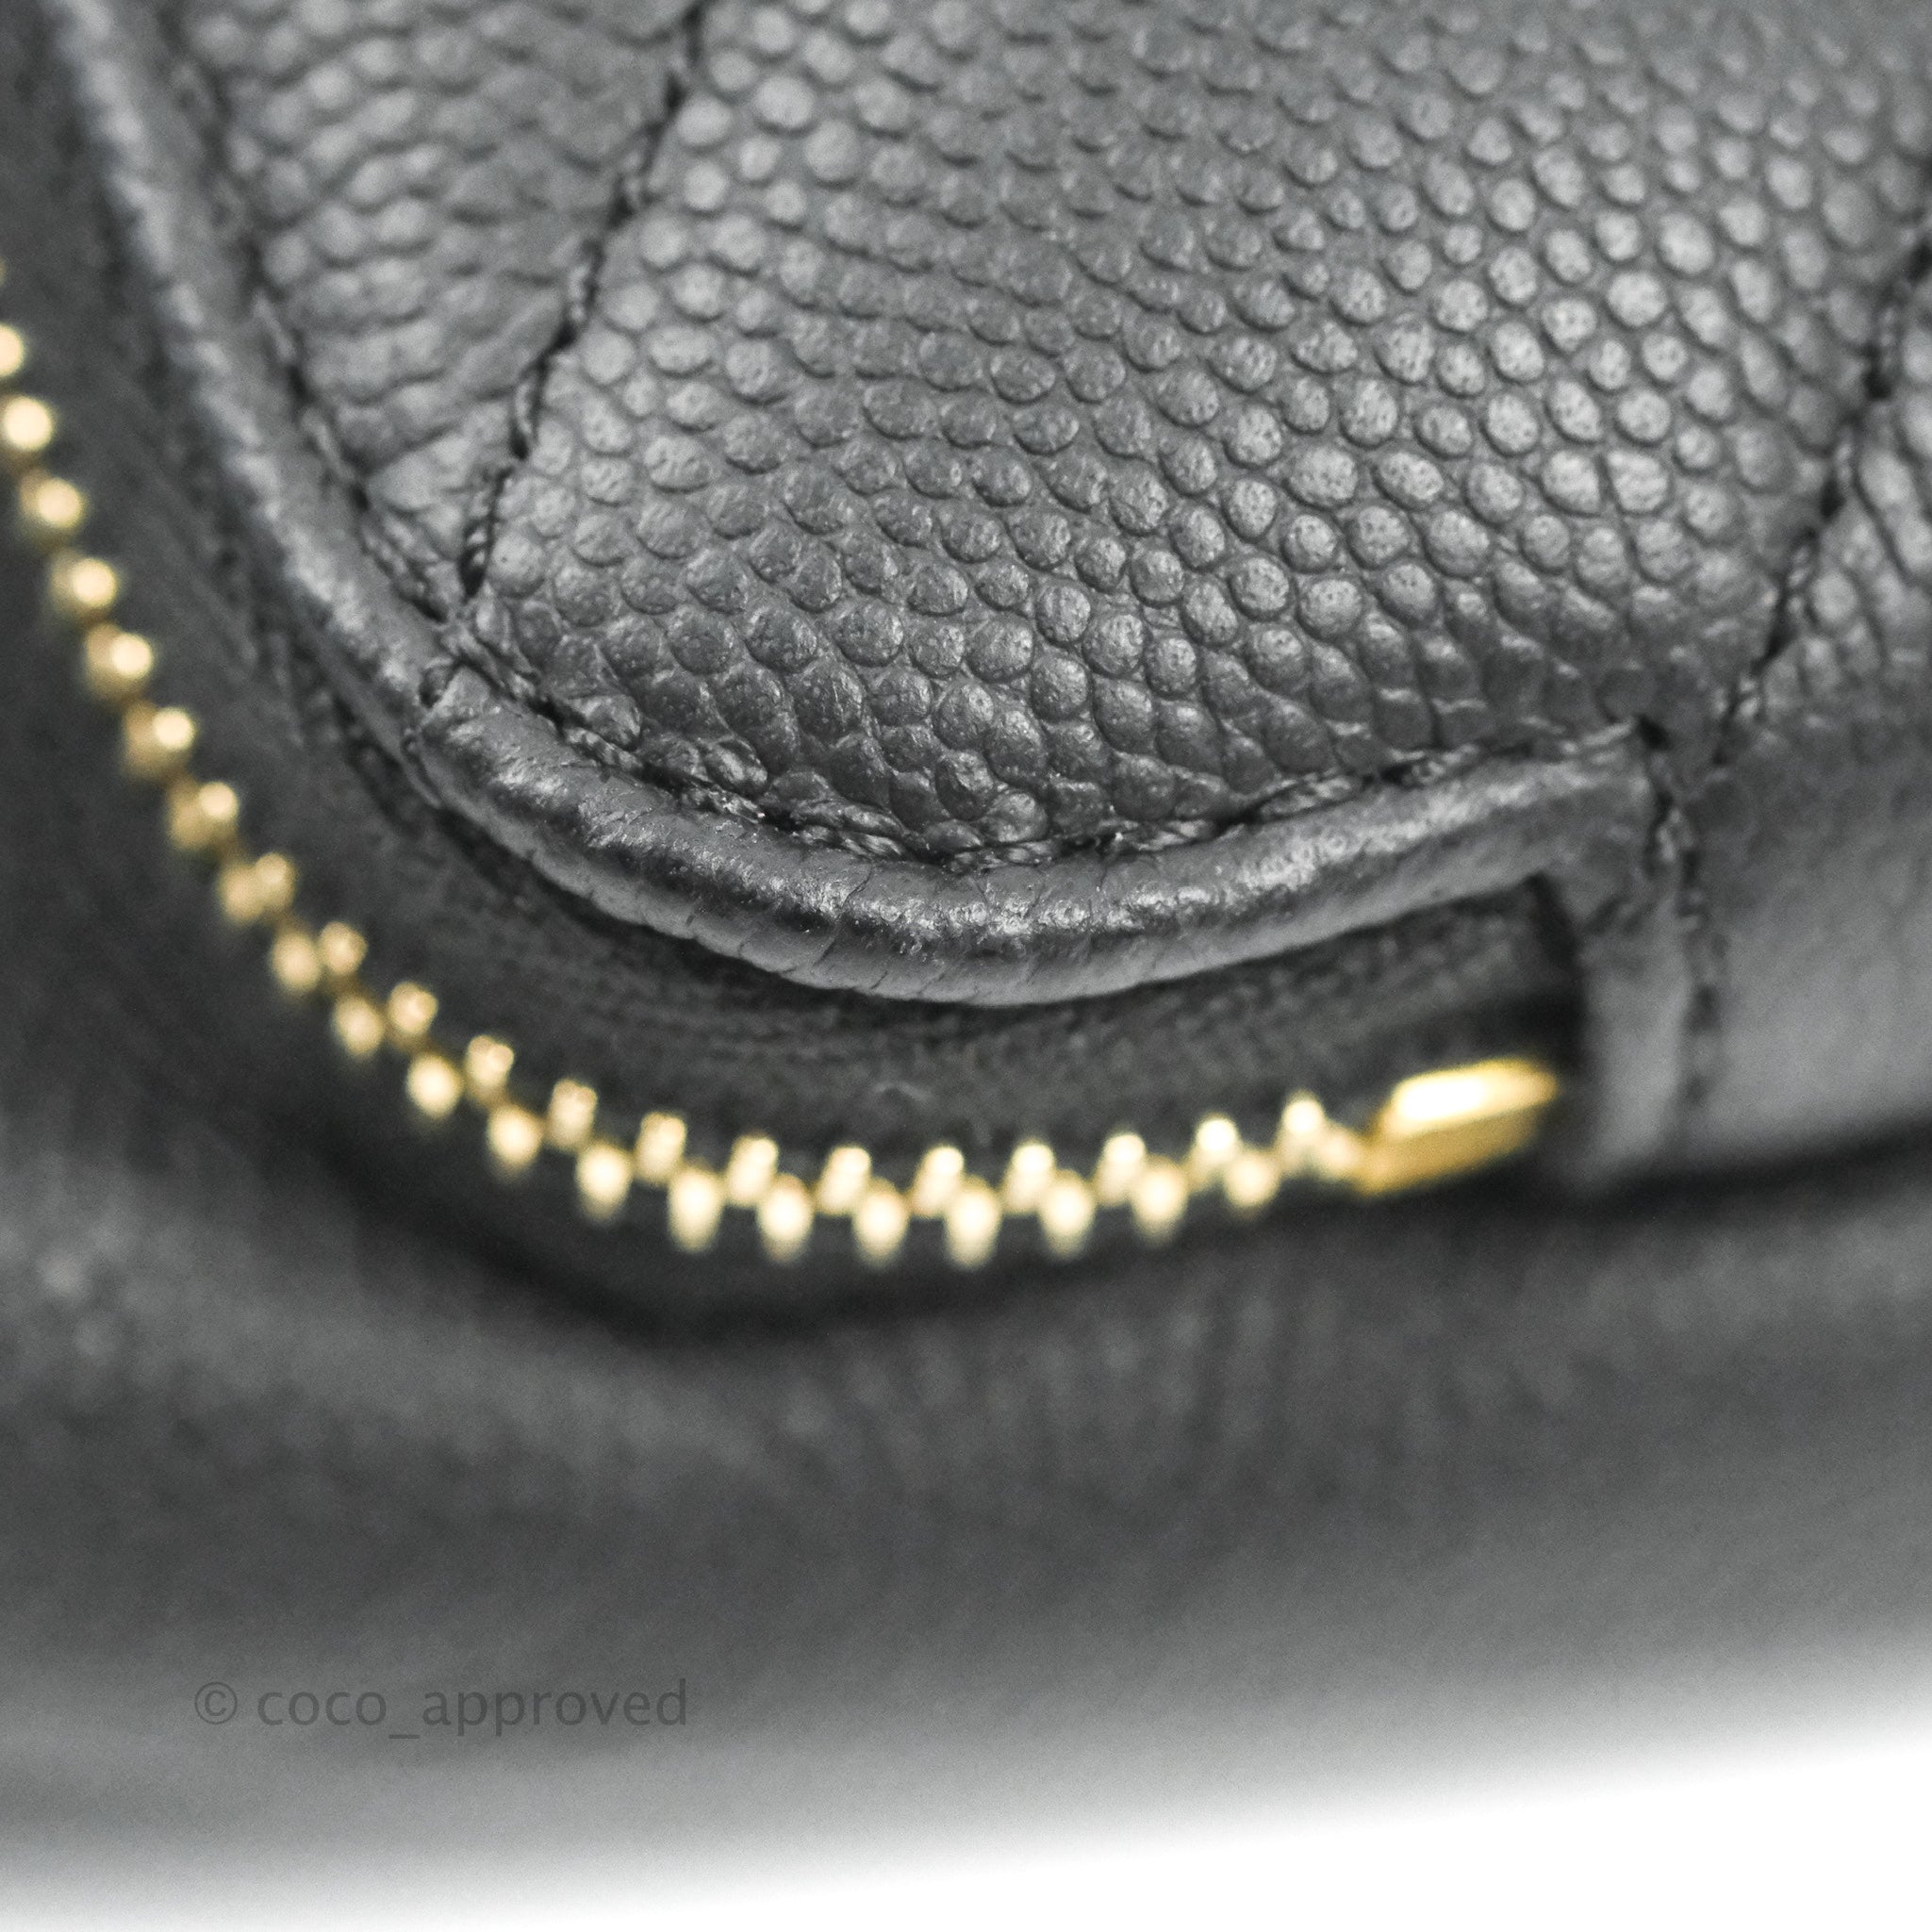 Chanel Women's Belt Bags